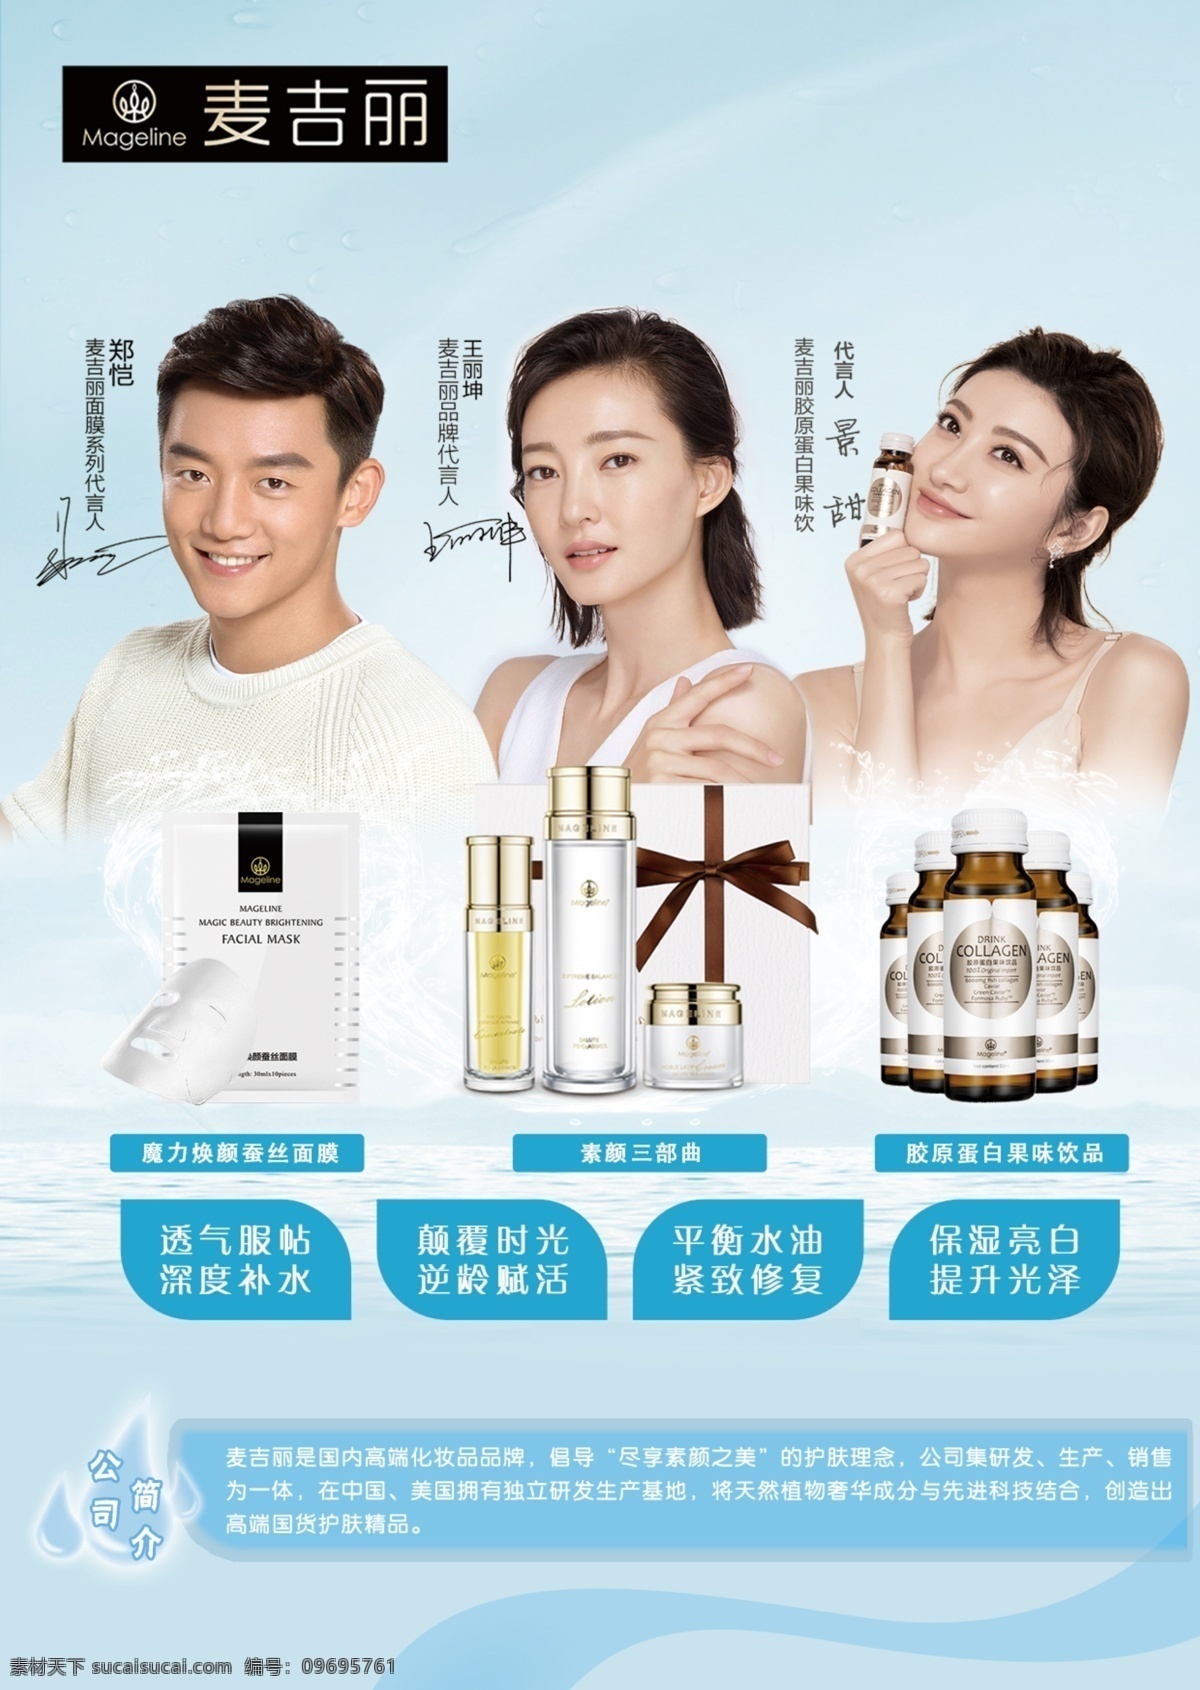 明星 产品 麦吉丽海报 麦吉丽产品 护肤 美容 中国新歌声 dm宣传单